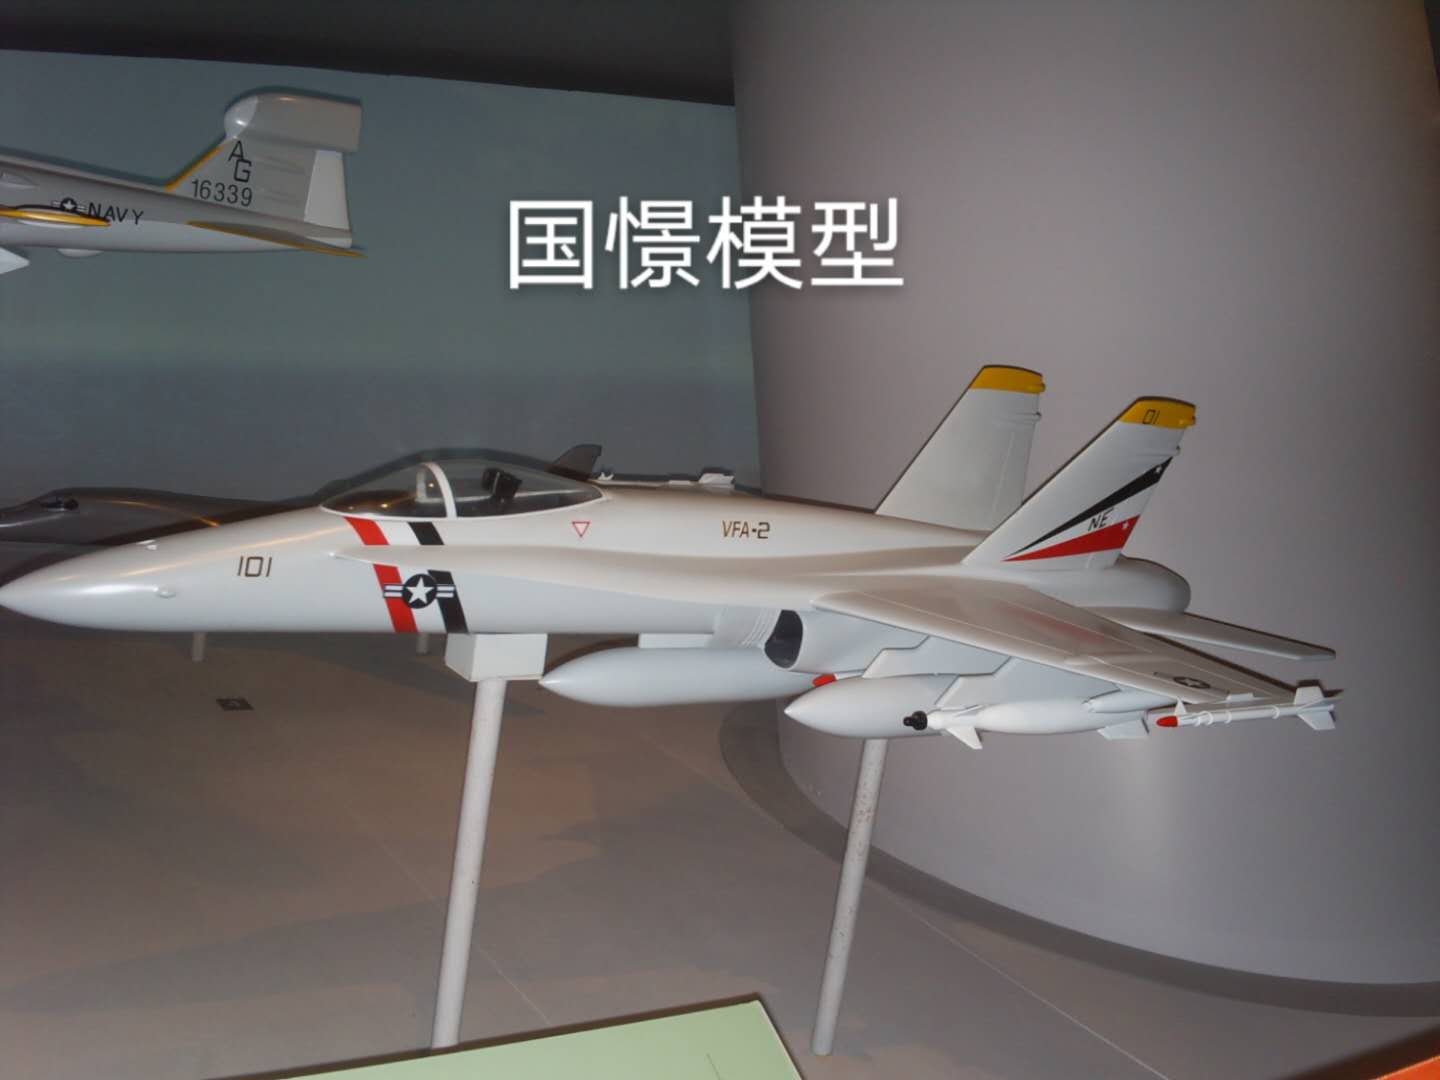 德江县军事模型